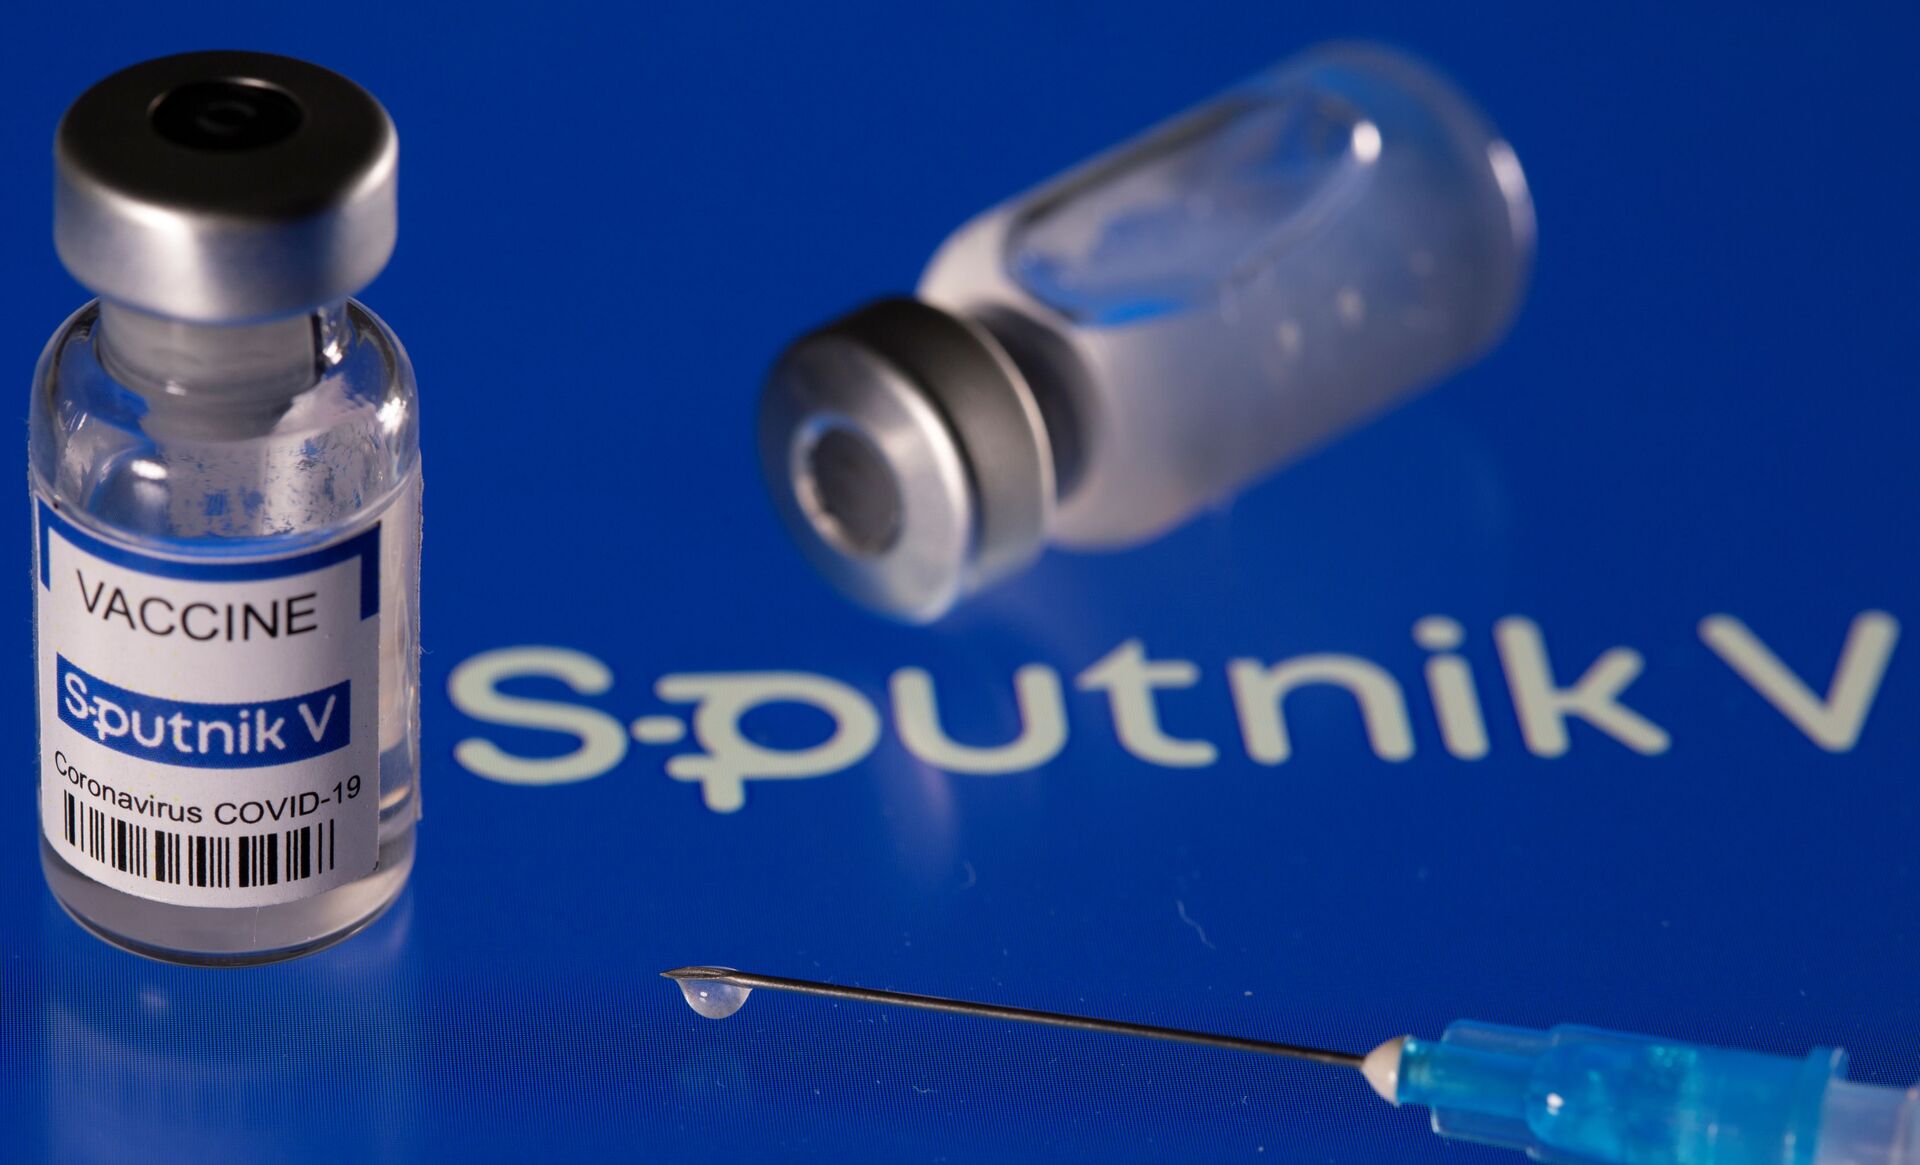 Guiana anuncia data de chegada de 200 mil doses da vacina Sputnik V - Sputnik Brasil, 1920, 27.03.2021